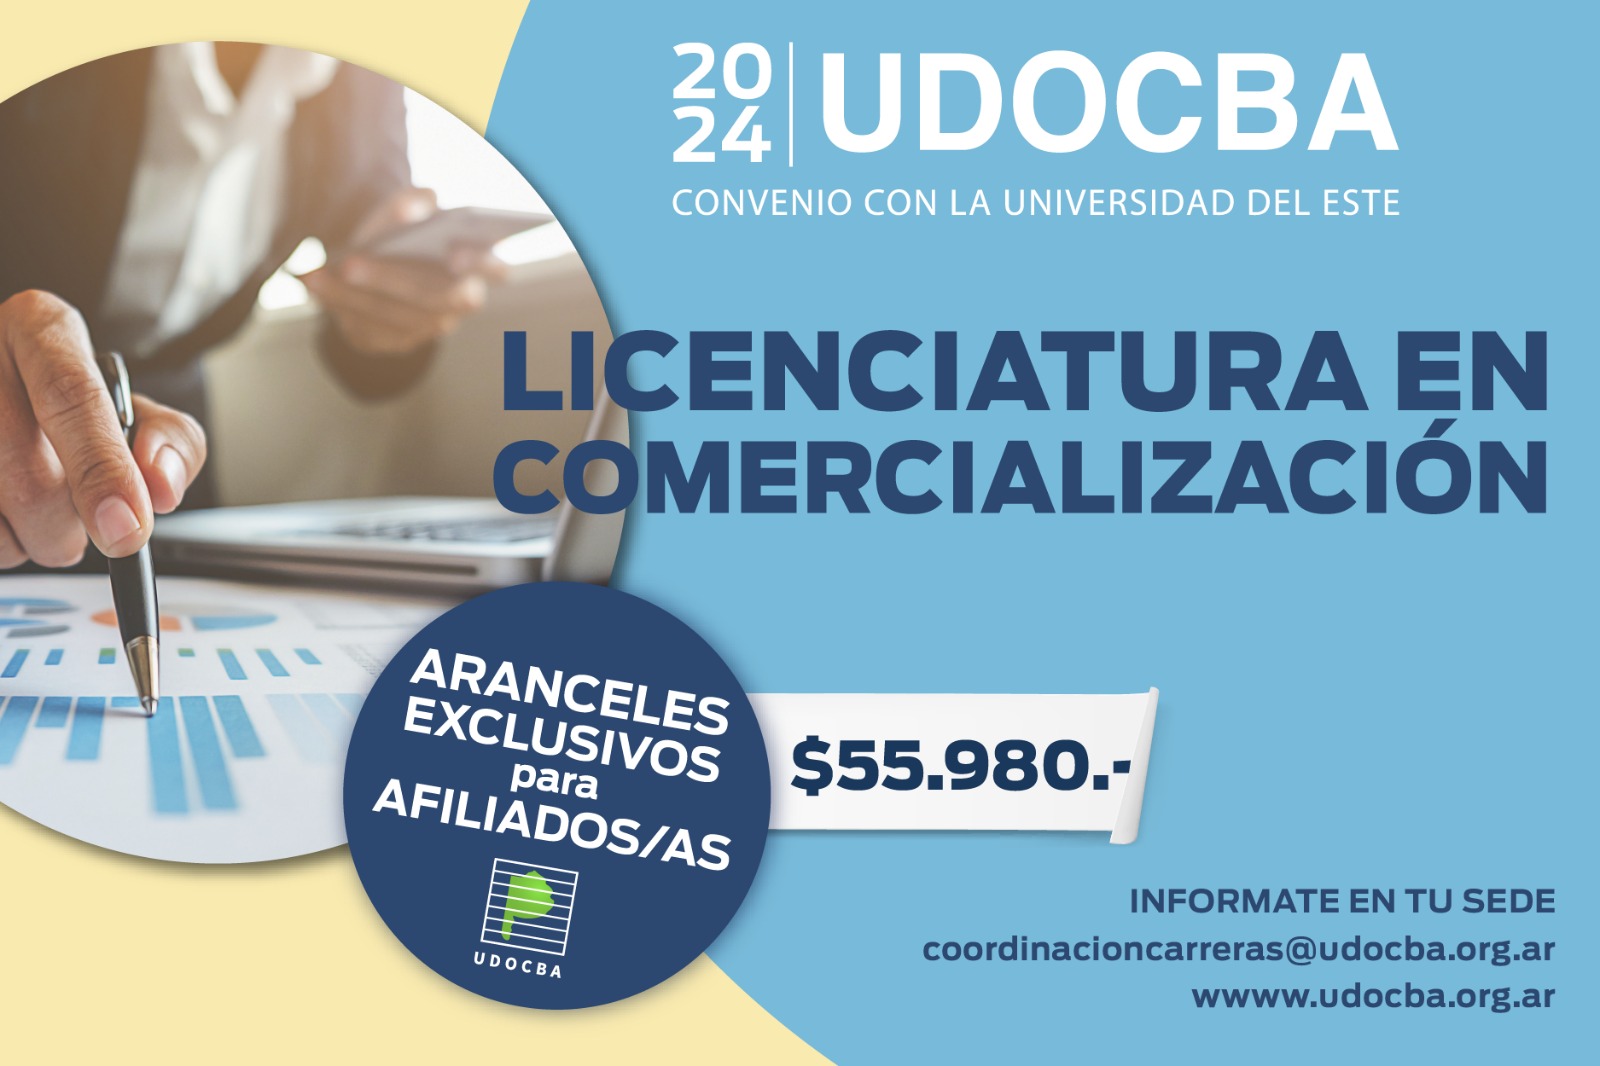 UDOCBA UDOCBA Licenciaturas convenio UDOCBA - UDE-0-1